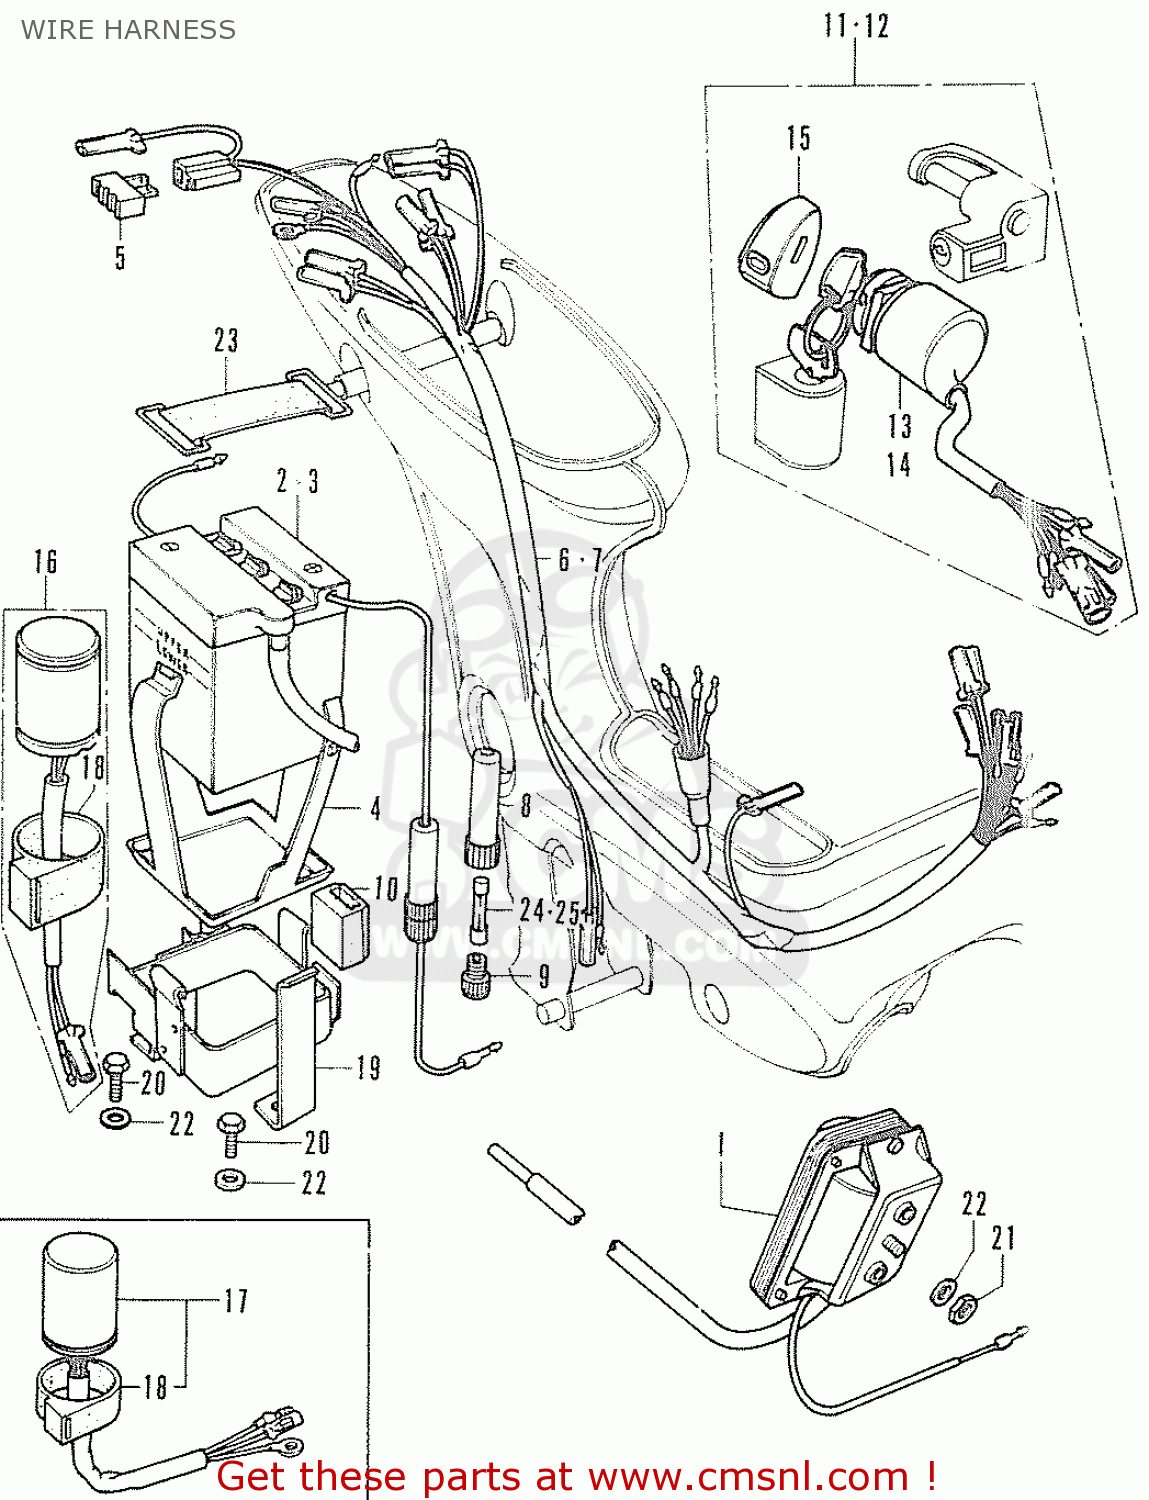 Honda chaly tuning parts #6